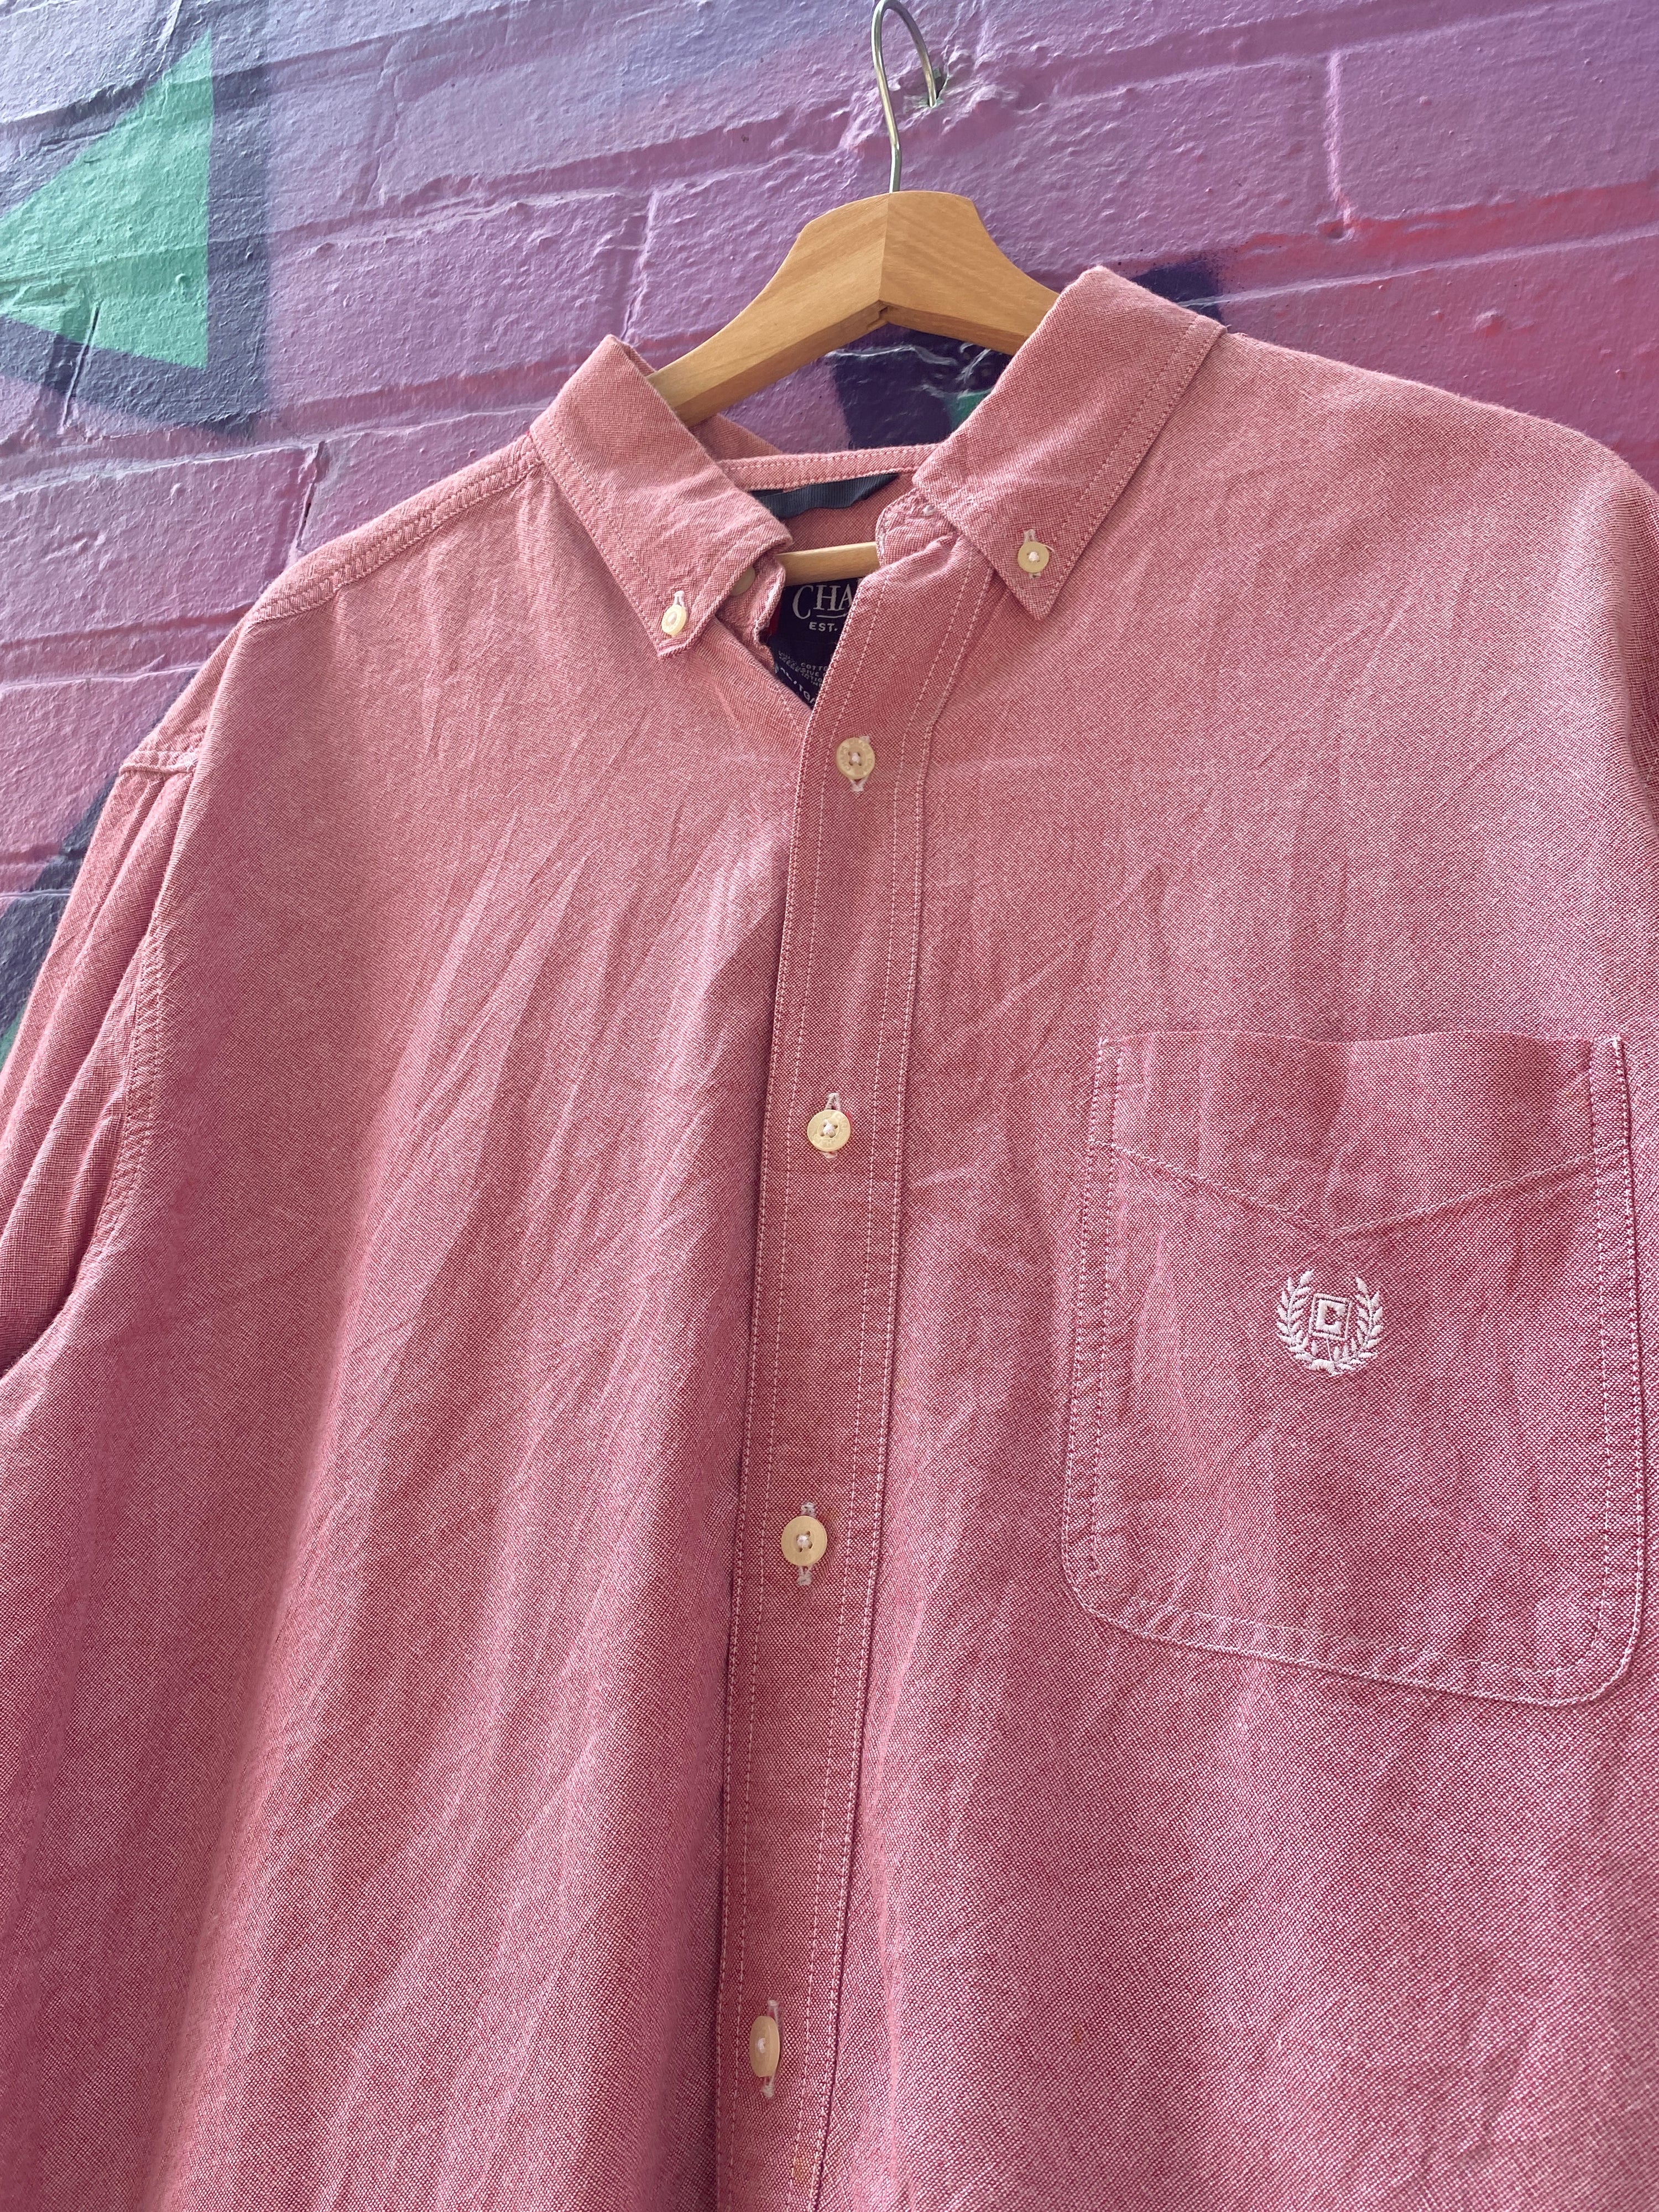 XL - RL Chaps LS Button Up Pink